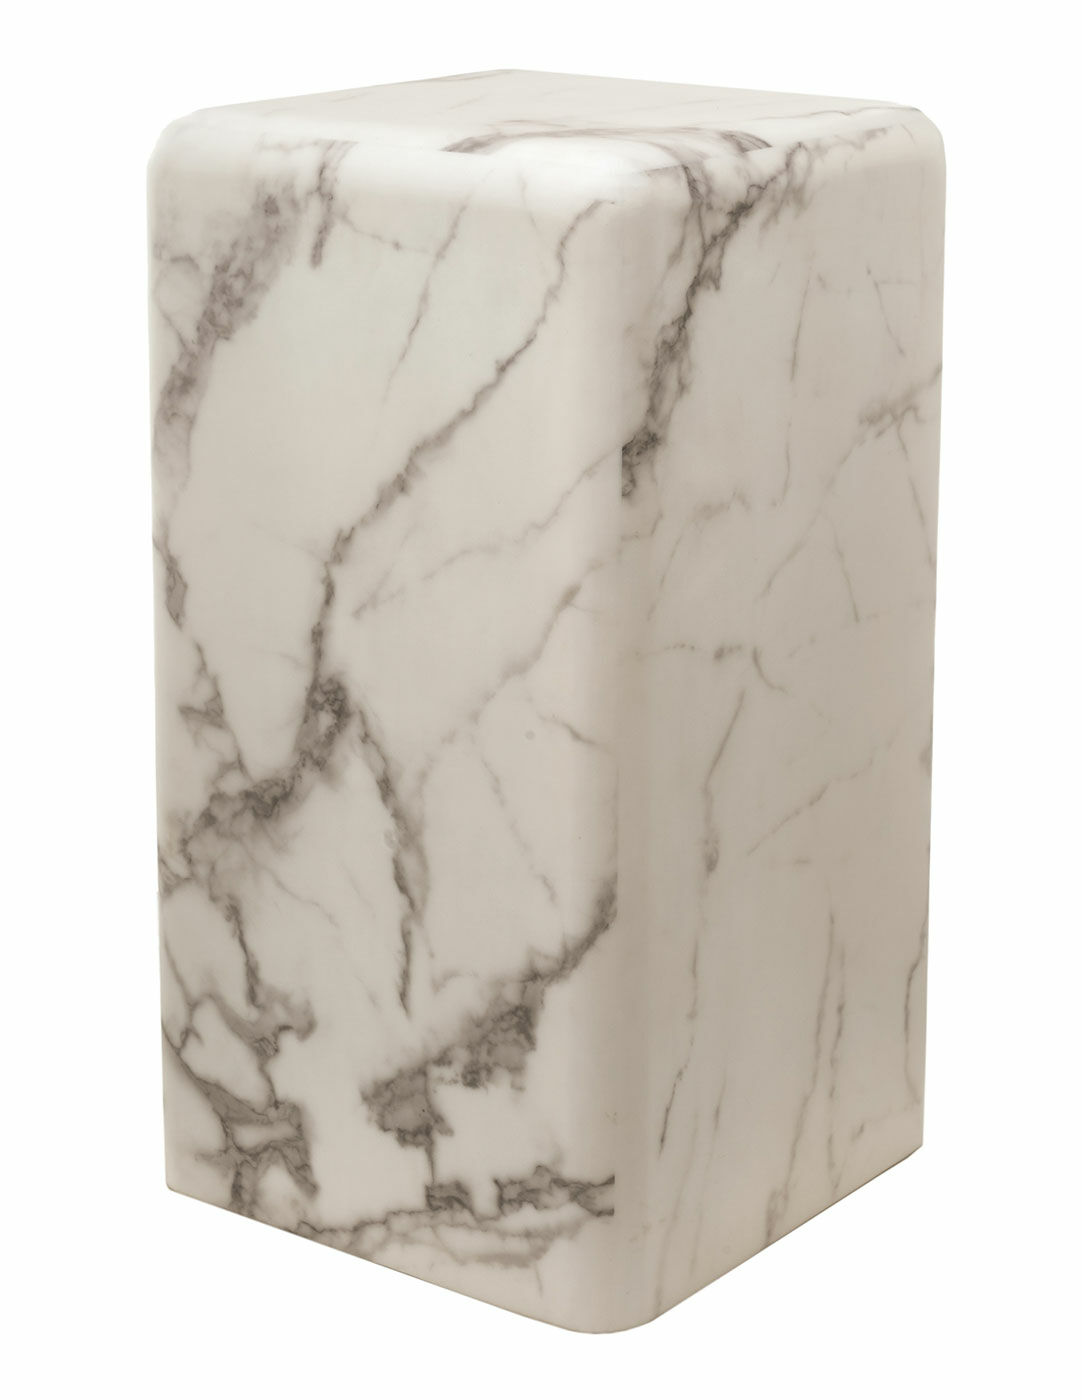 Dekorativ søjle "Marble white" i marmorlook (lille version, højde 61 cm)